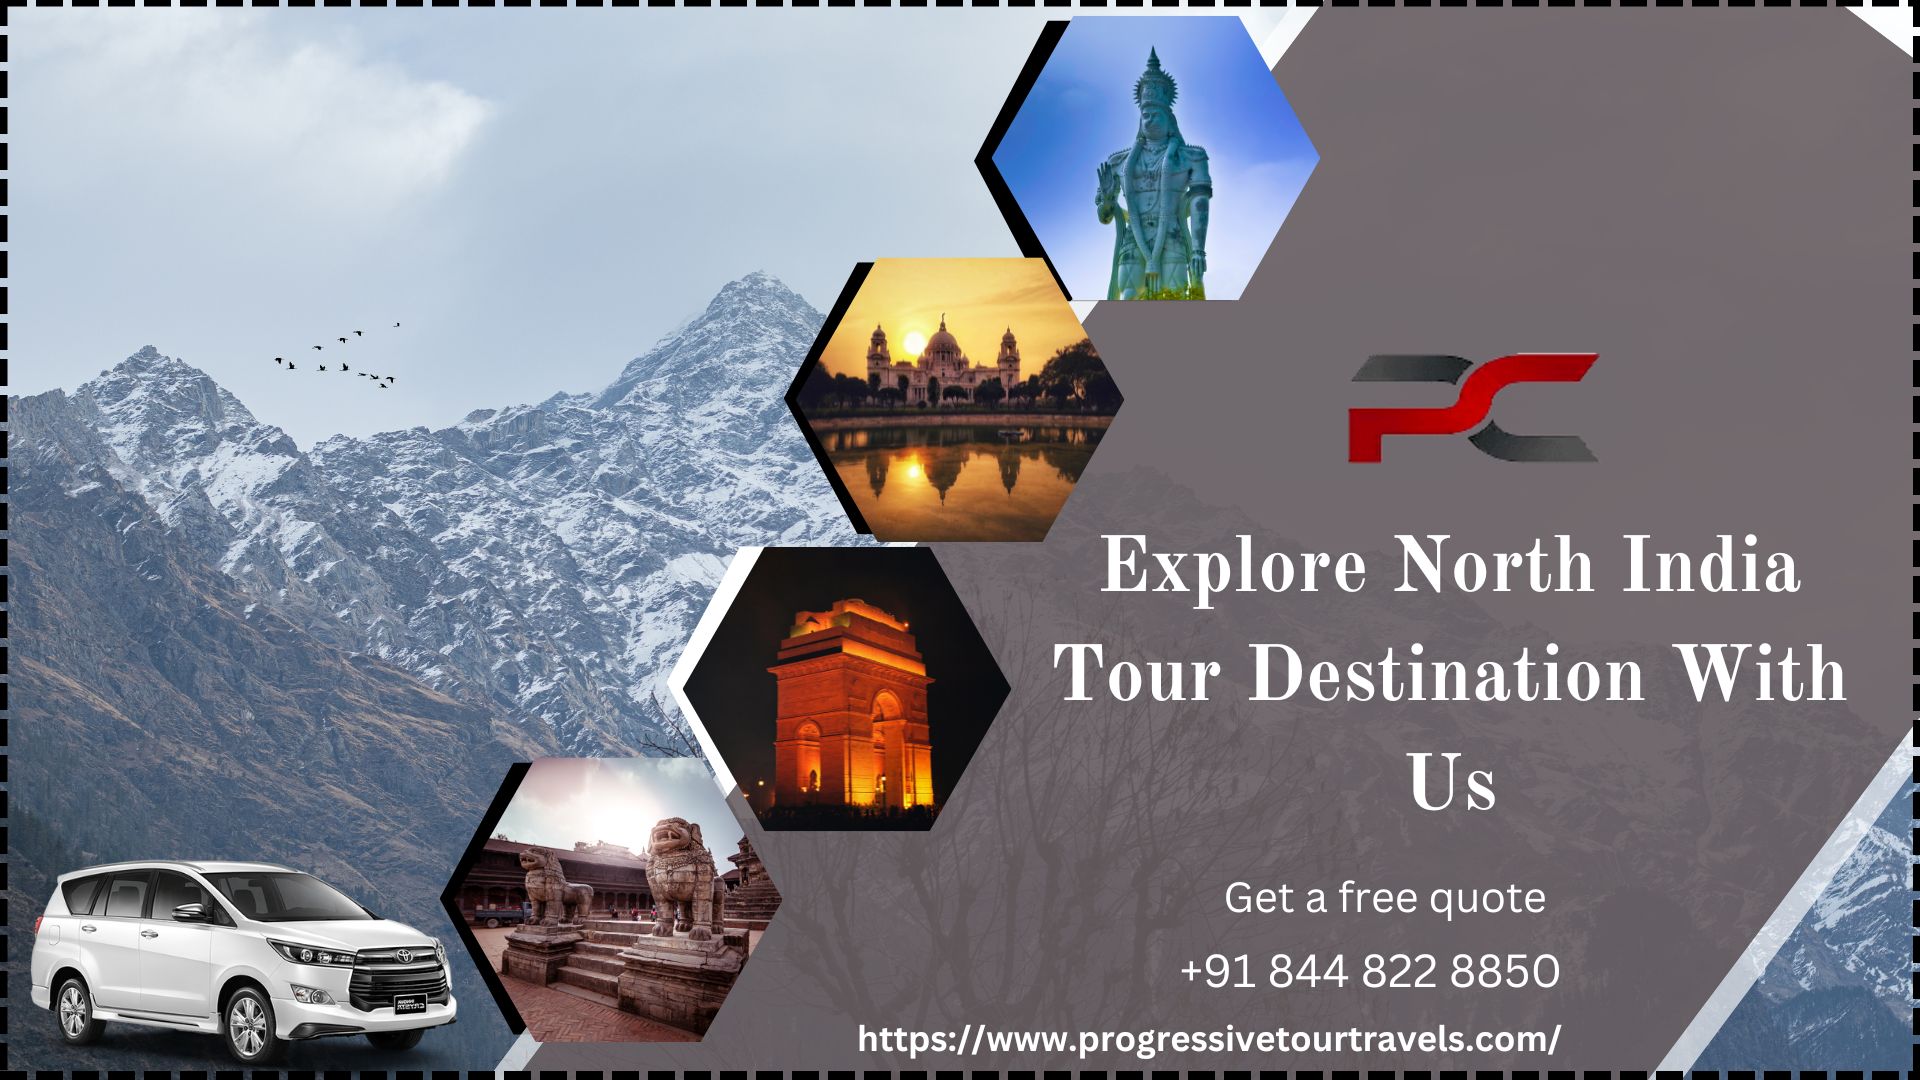 Explore North India tour Destination With Us-6c55fa80